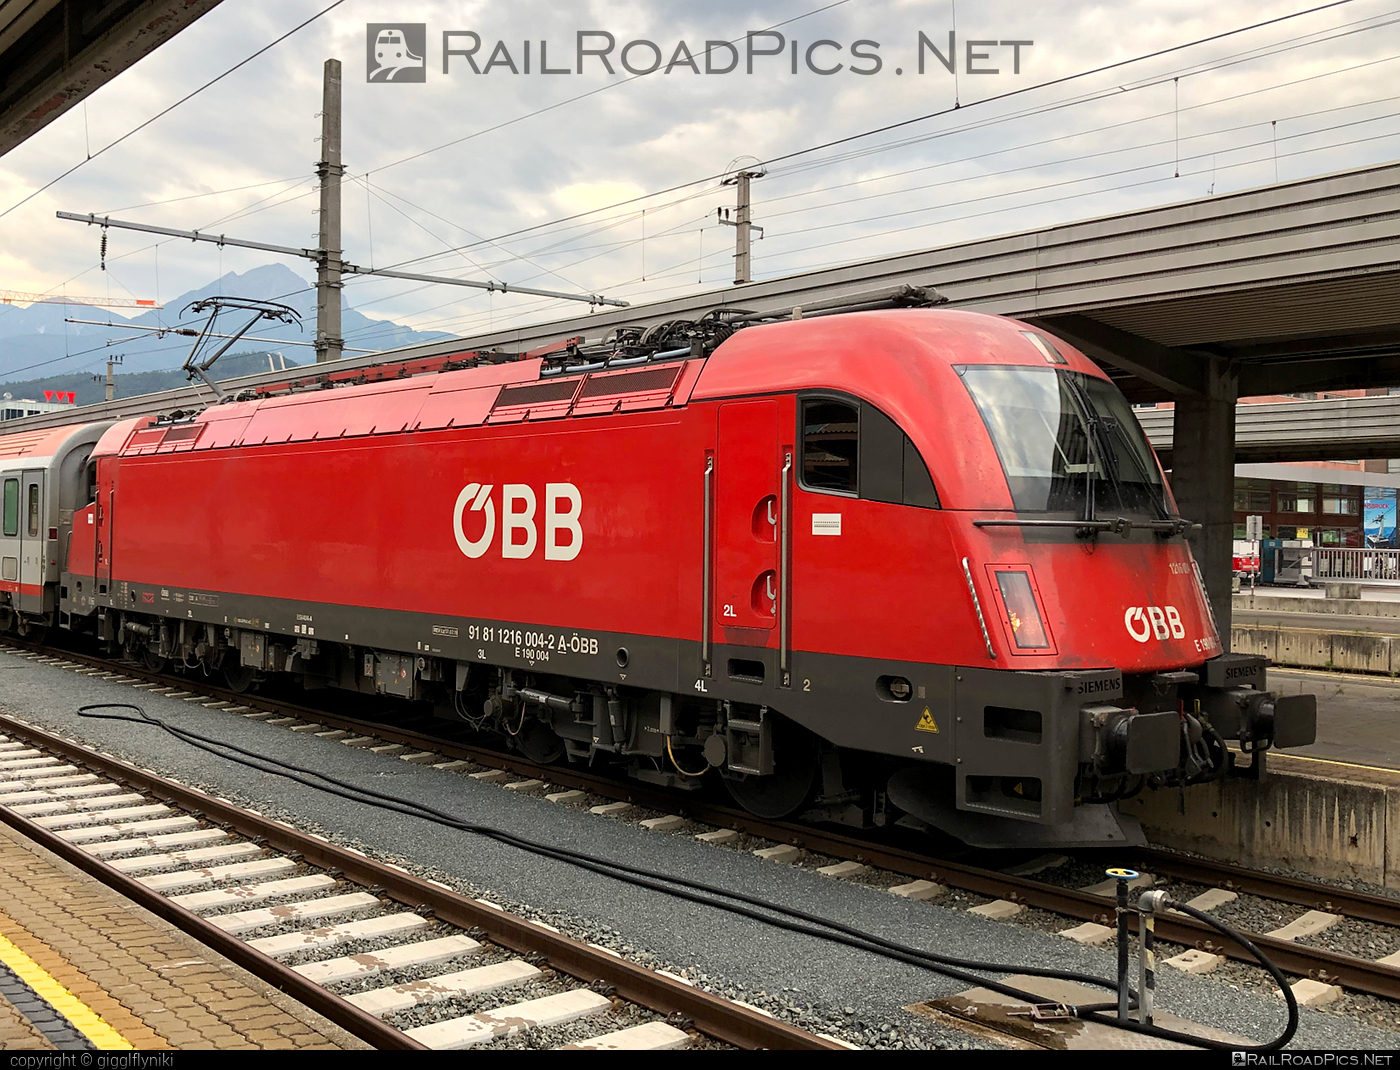 Siemens ES 64 U4 - 1216 004 operated by Österreichische Bundesbahnen #es64 #es64u4 #eurosprinter #obb #osterreichischebundesbahnen #siemens #siemensEs64 #siemensEs64u4 #siemenstaurus #taurus #tauruslocomotive